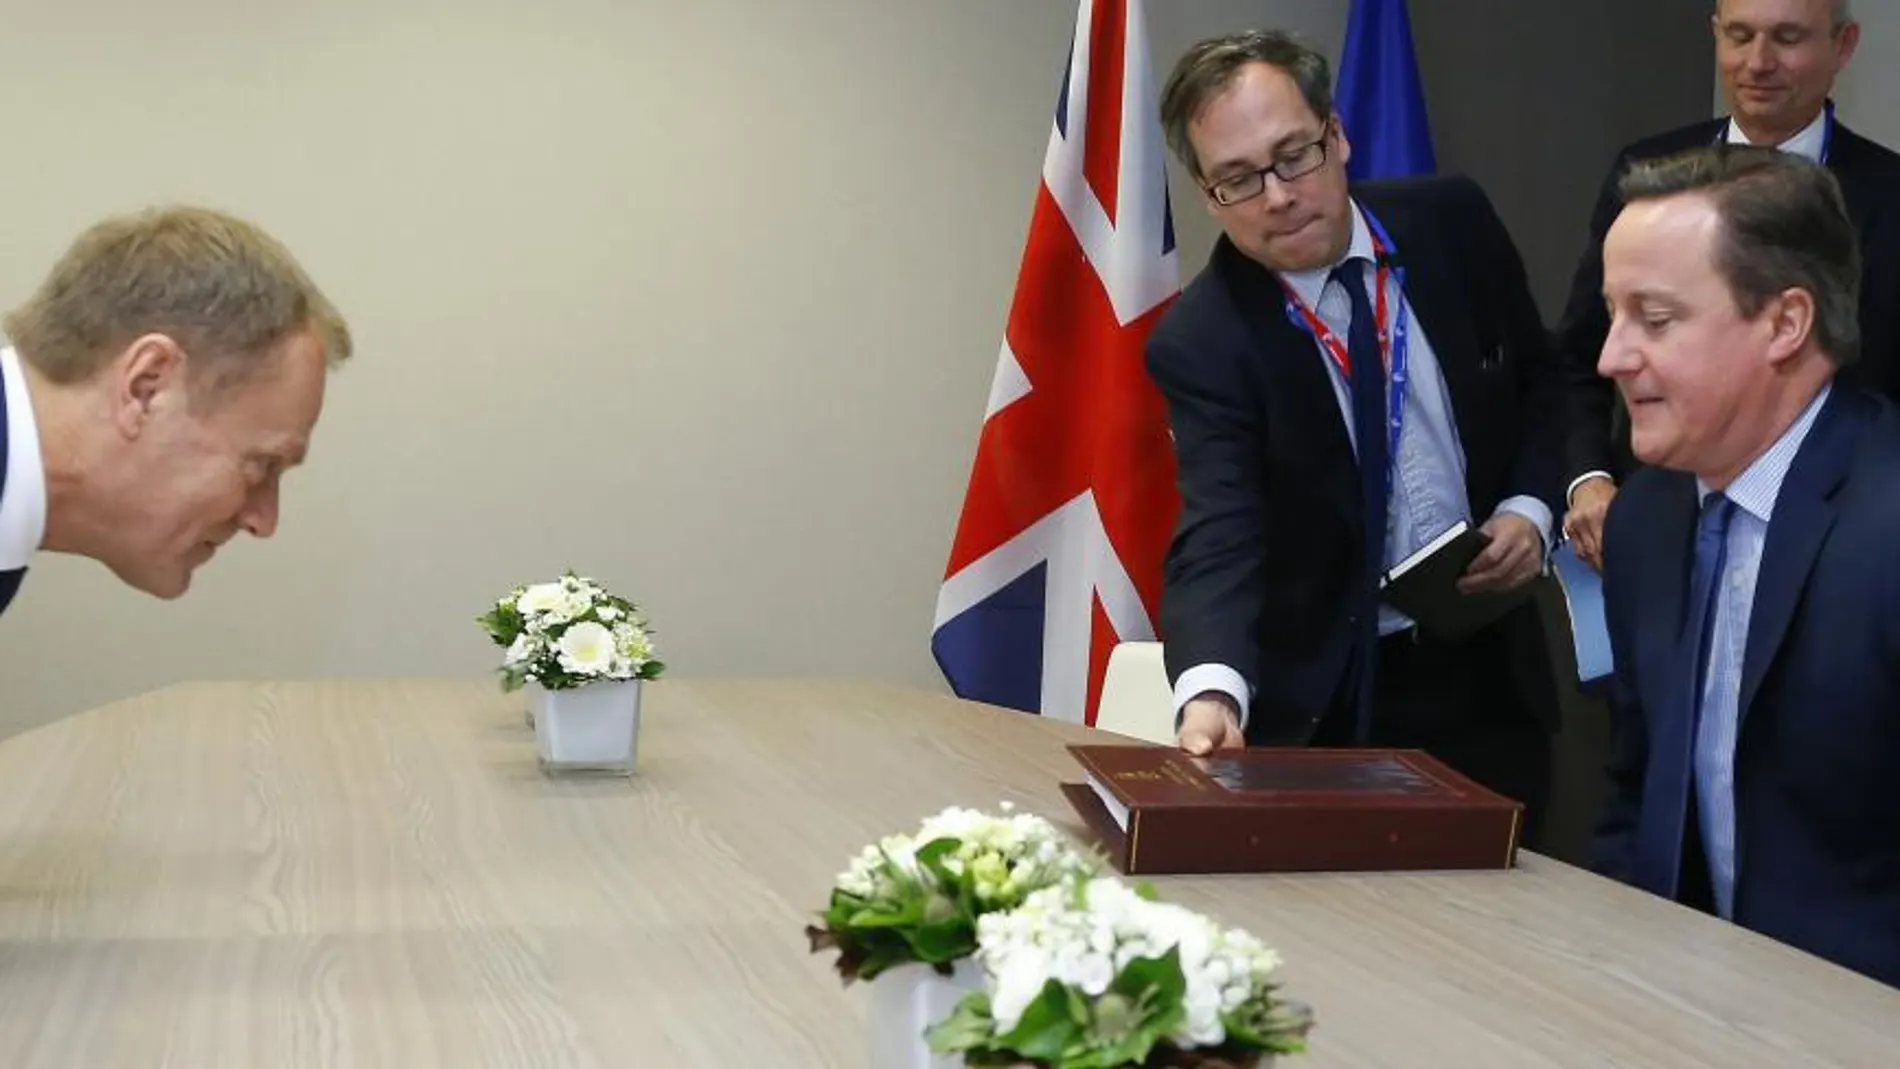 El primer ministro británico, David Cameron, y el presidente del Consejo de Europa, Donald Tusk